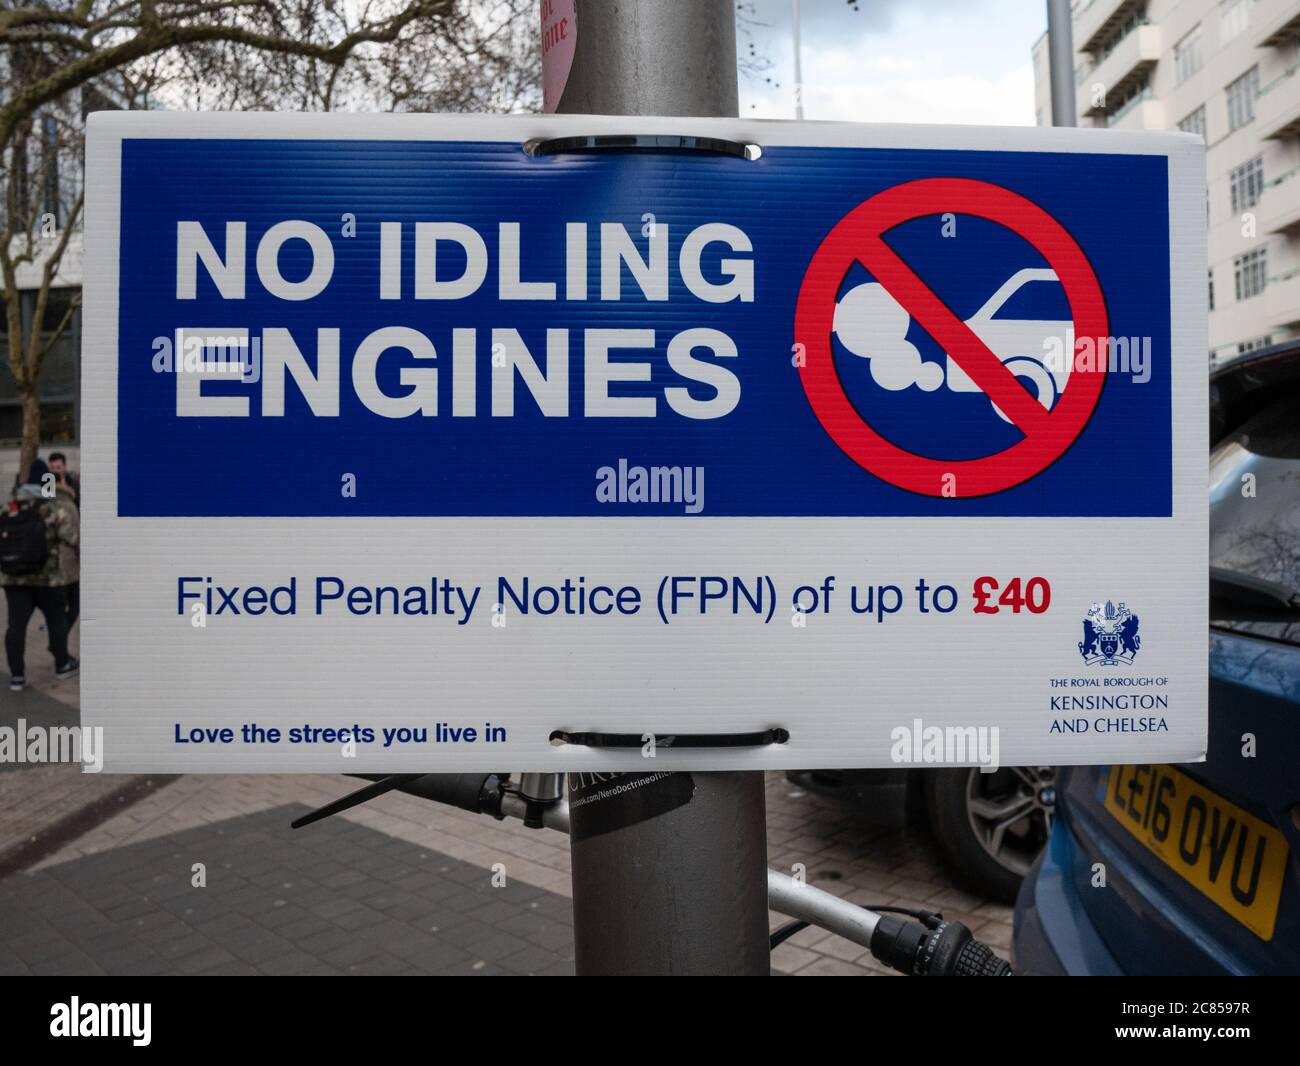 Londres, Royaume-Uni - octobre 30 2018 : la signalisation dans le centre de Londres interdit aux conducteurs de laisser leurs moteurs tourner lorsqu'ils sont garés Banque D'Images